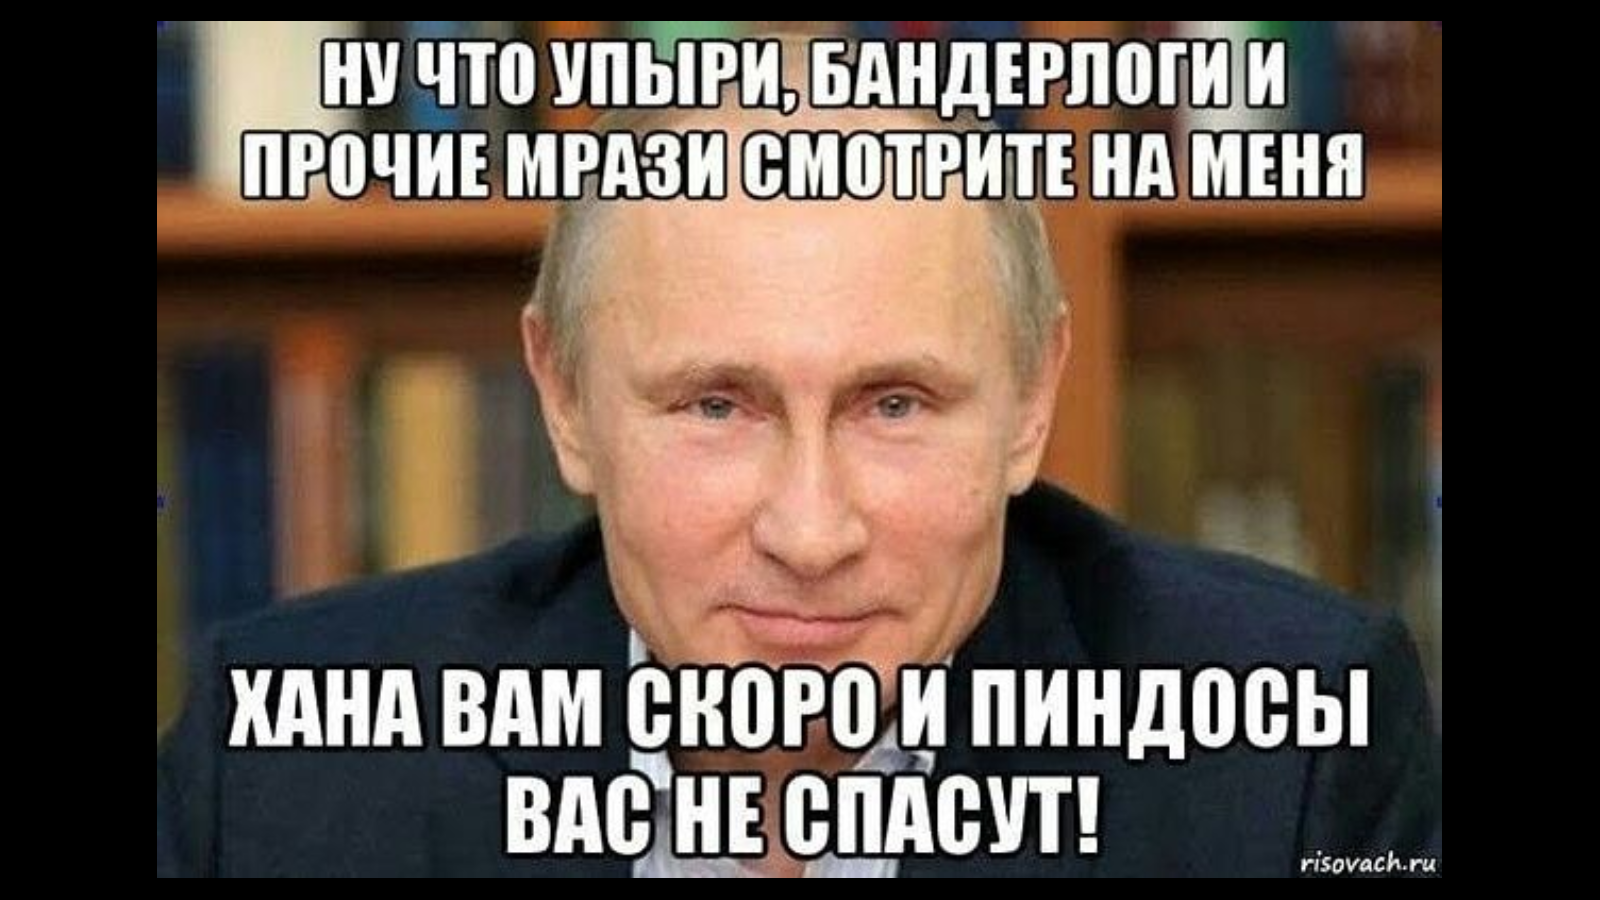 Вонючая мразь. Мемы про пиндосов. Мемы с Путиным и Хохлов.